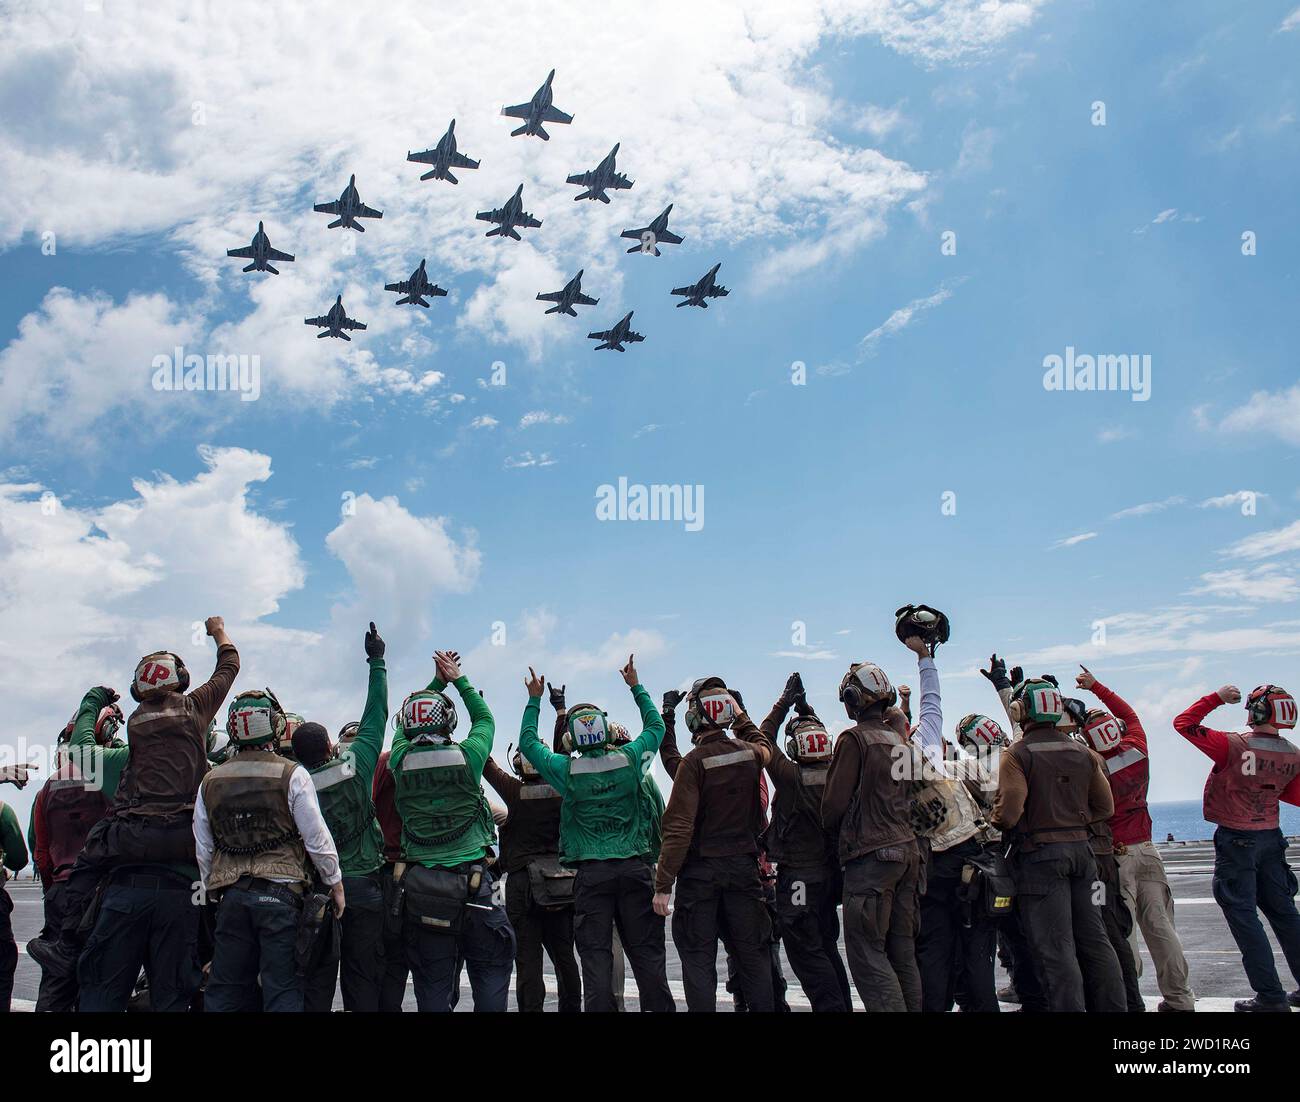 Die Segler feiern, als die ihrer Staffel zugeordneten Flugzeuge über den Flugzeugträger USS George H.W. Bush fliegen. Stockfoto